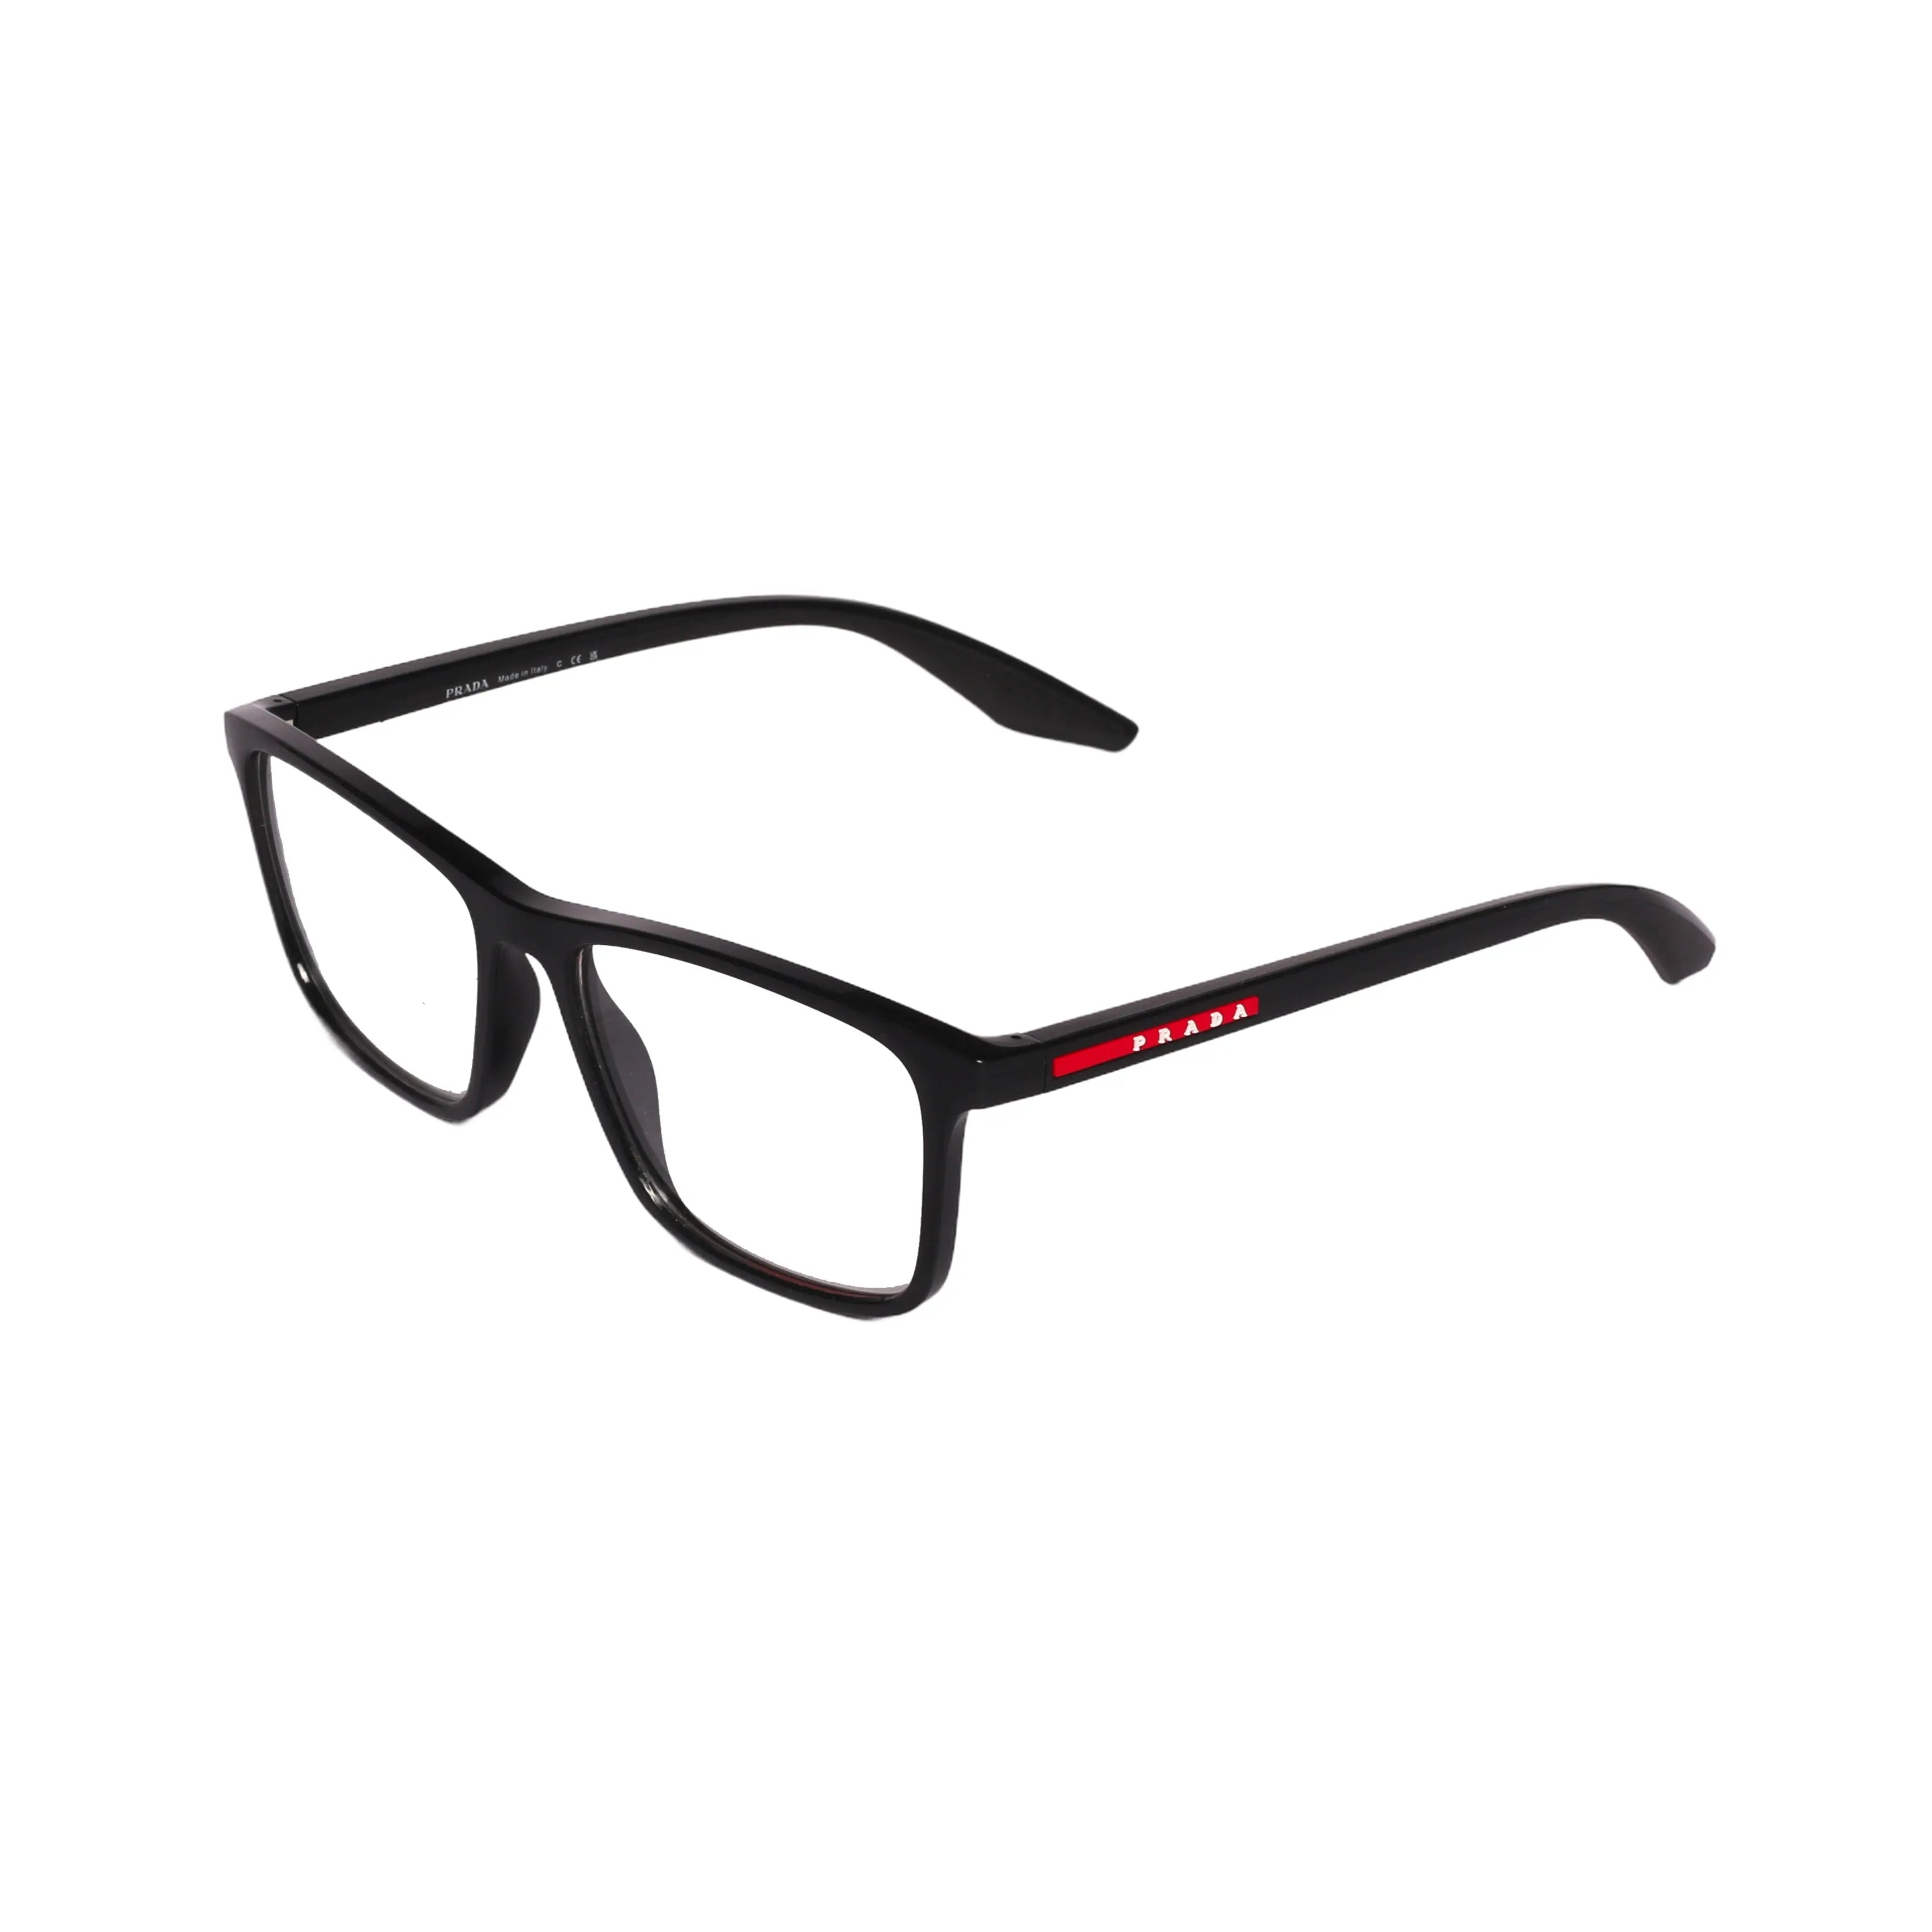 Prada-0PS01QV-56-1AB-1O1 Eyeglasses - Premium Eyeglasses from Prada - Just Rs. 20390! Shop now at Laxmi Opticians